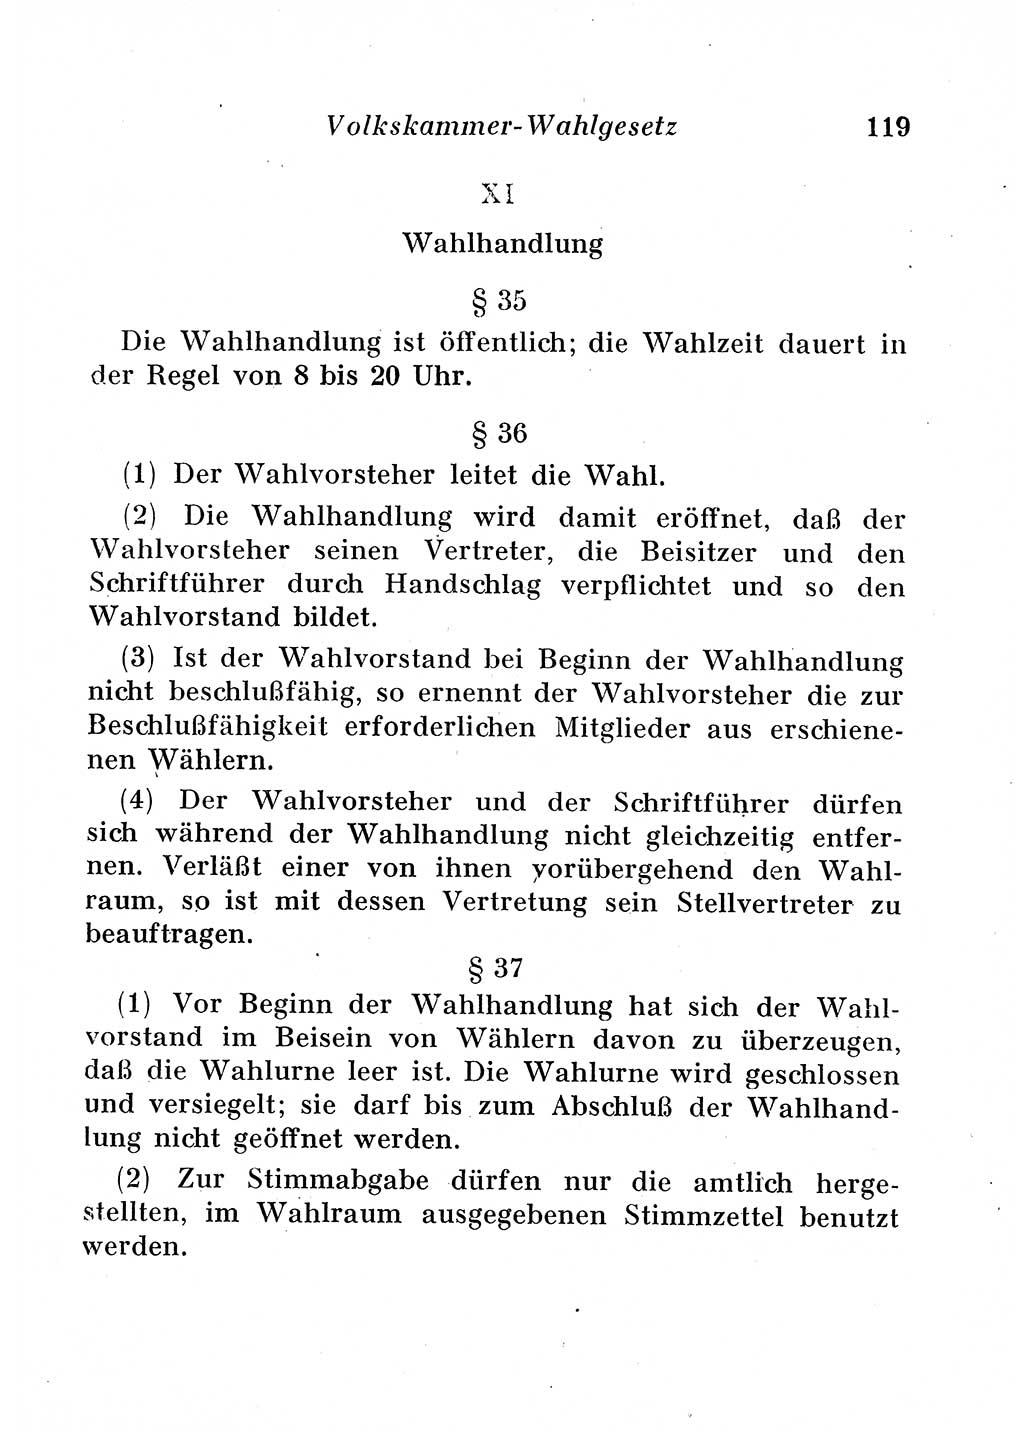 Staats- und verwaltungsrechtliche Gesetze der Deutschen Demokratischen Republik (DDR) 1958, Seite 119 (StVerwR Ges. DDR 1958, S. 119)